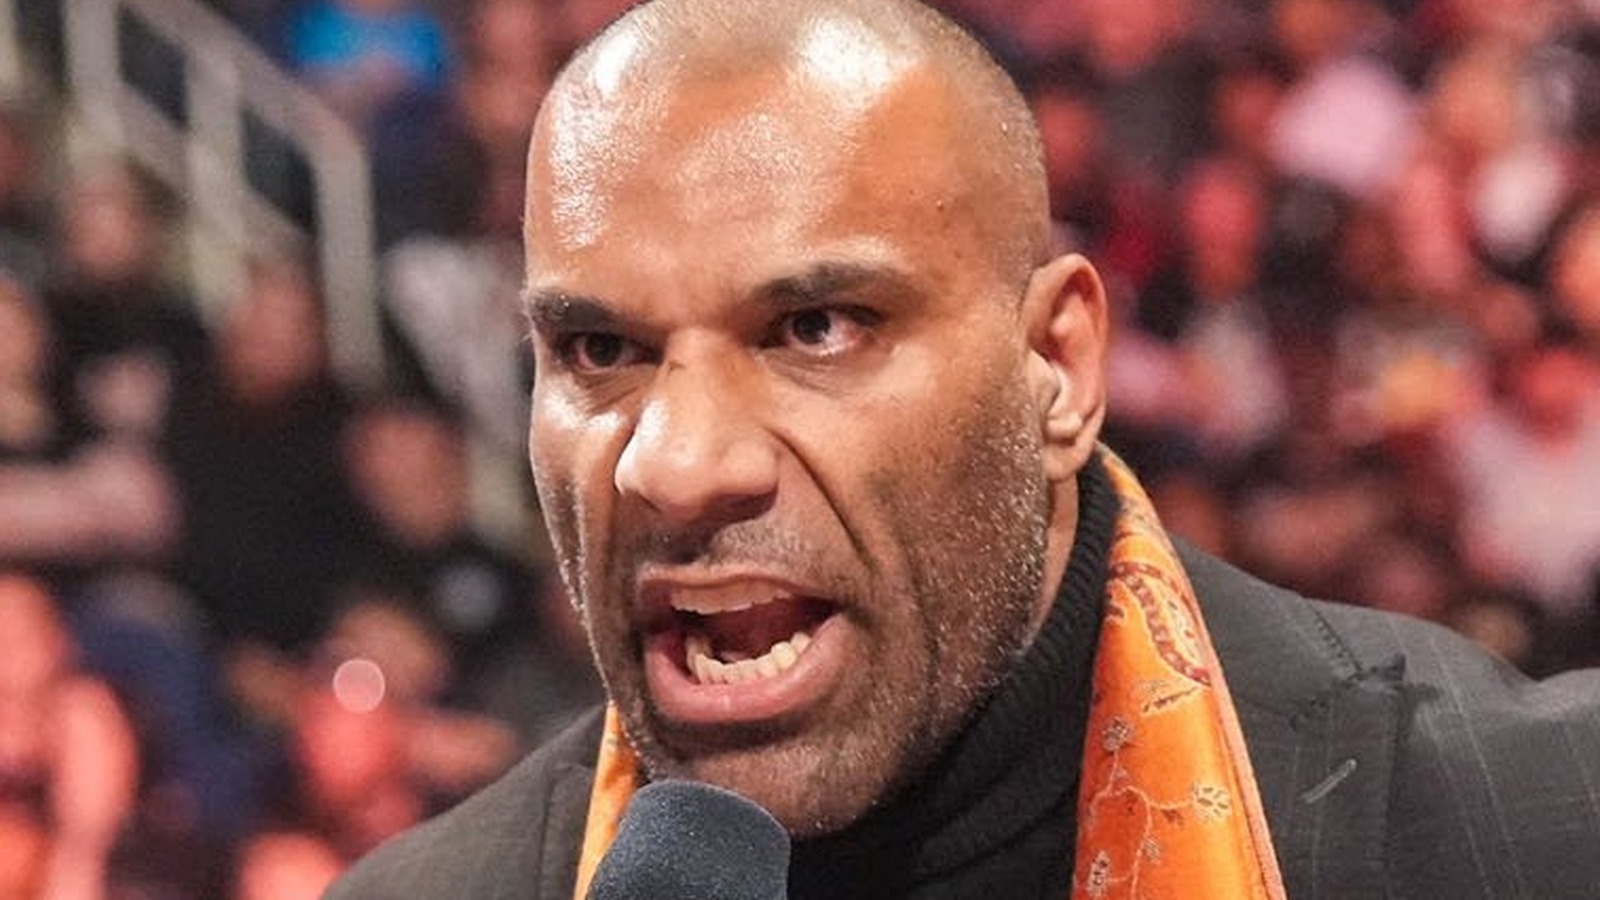 Según los informes, Jinder Mahal luchará en la WWE a pesar de servir como gerente de Indus Sher